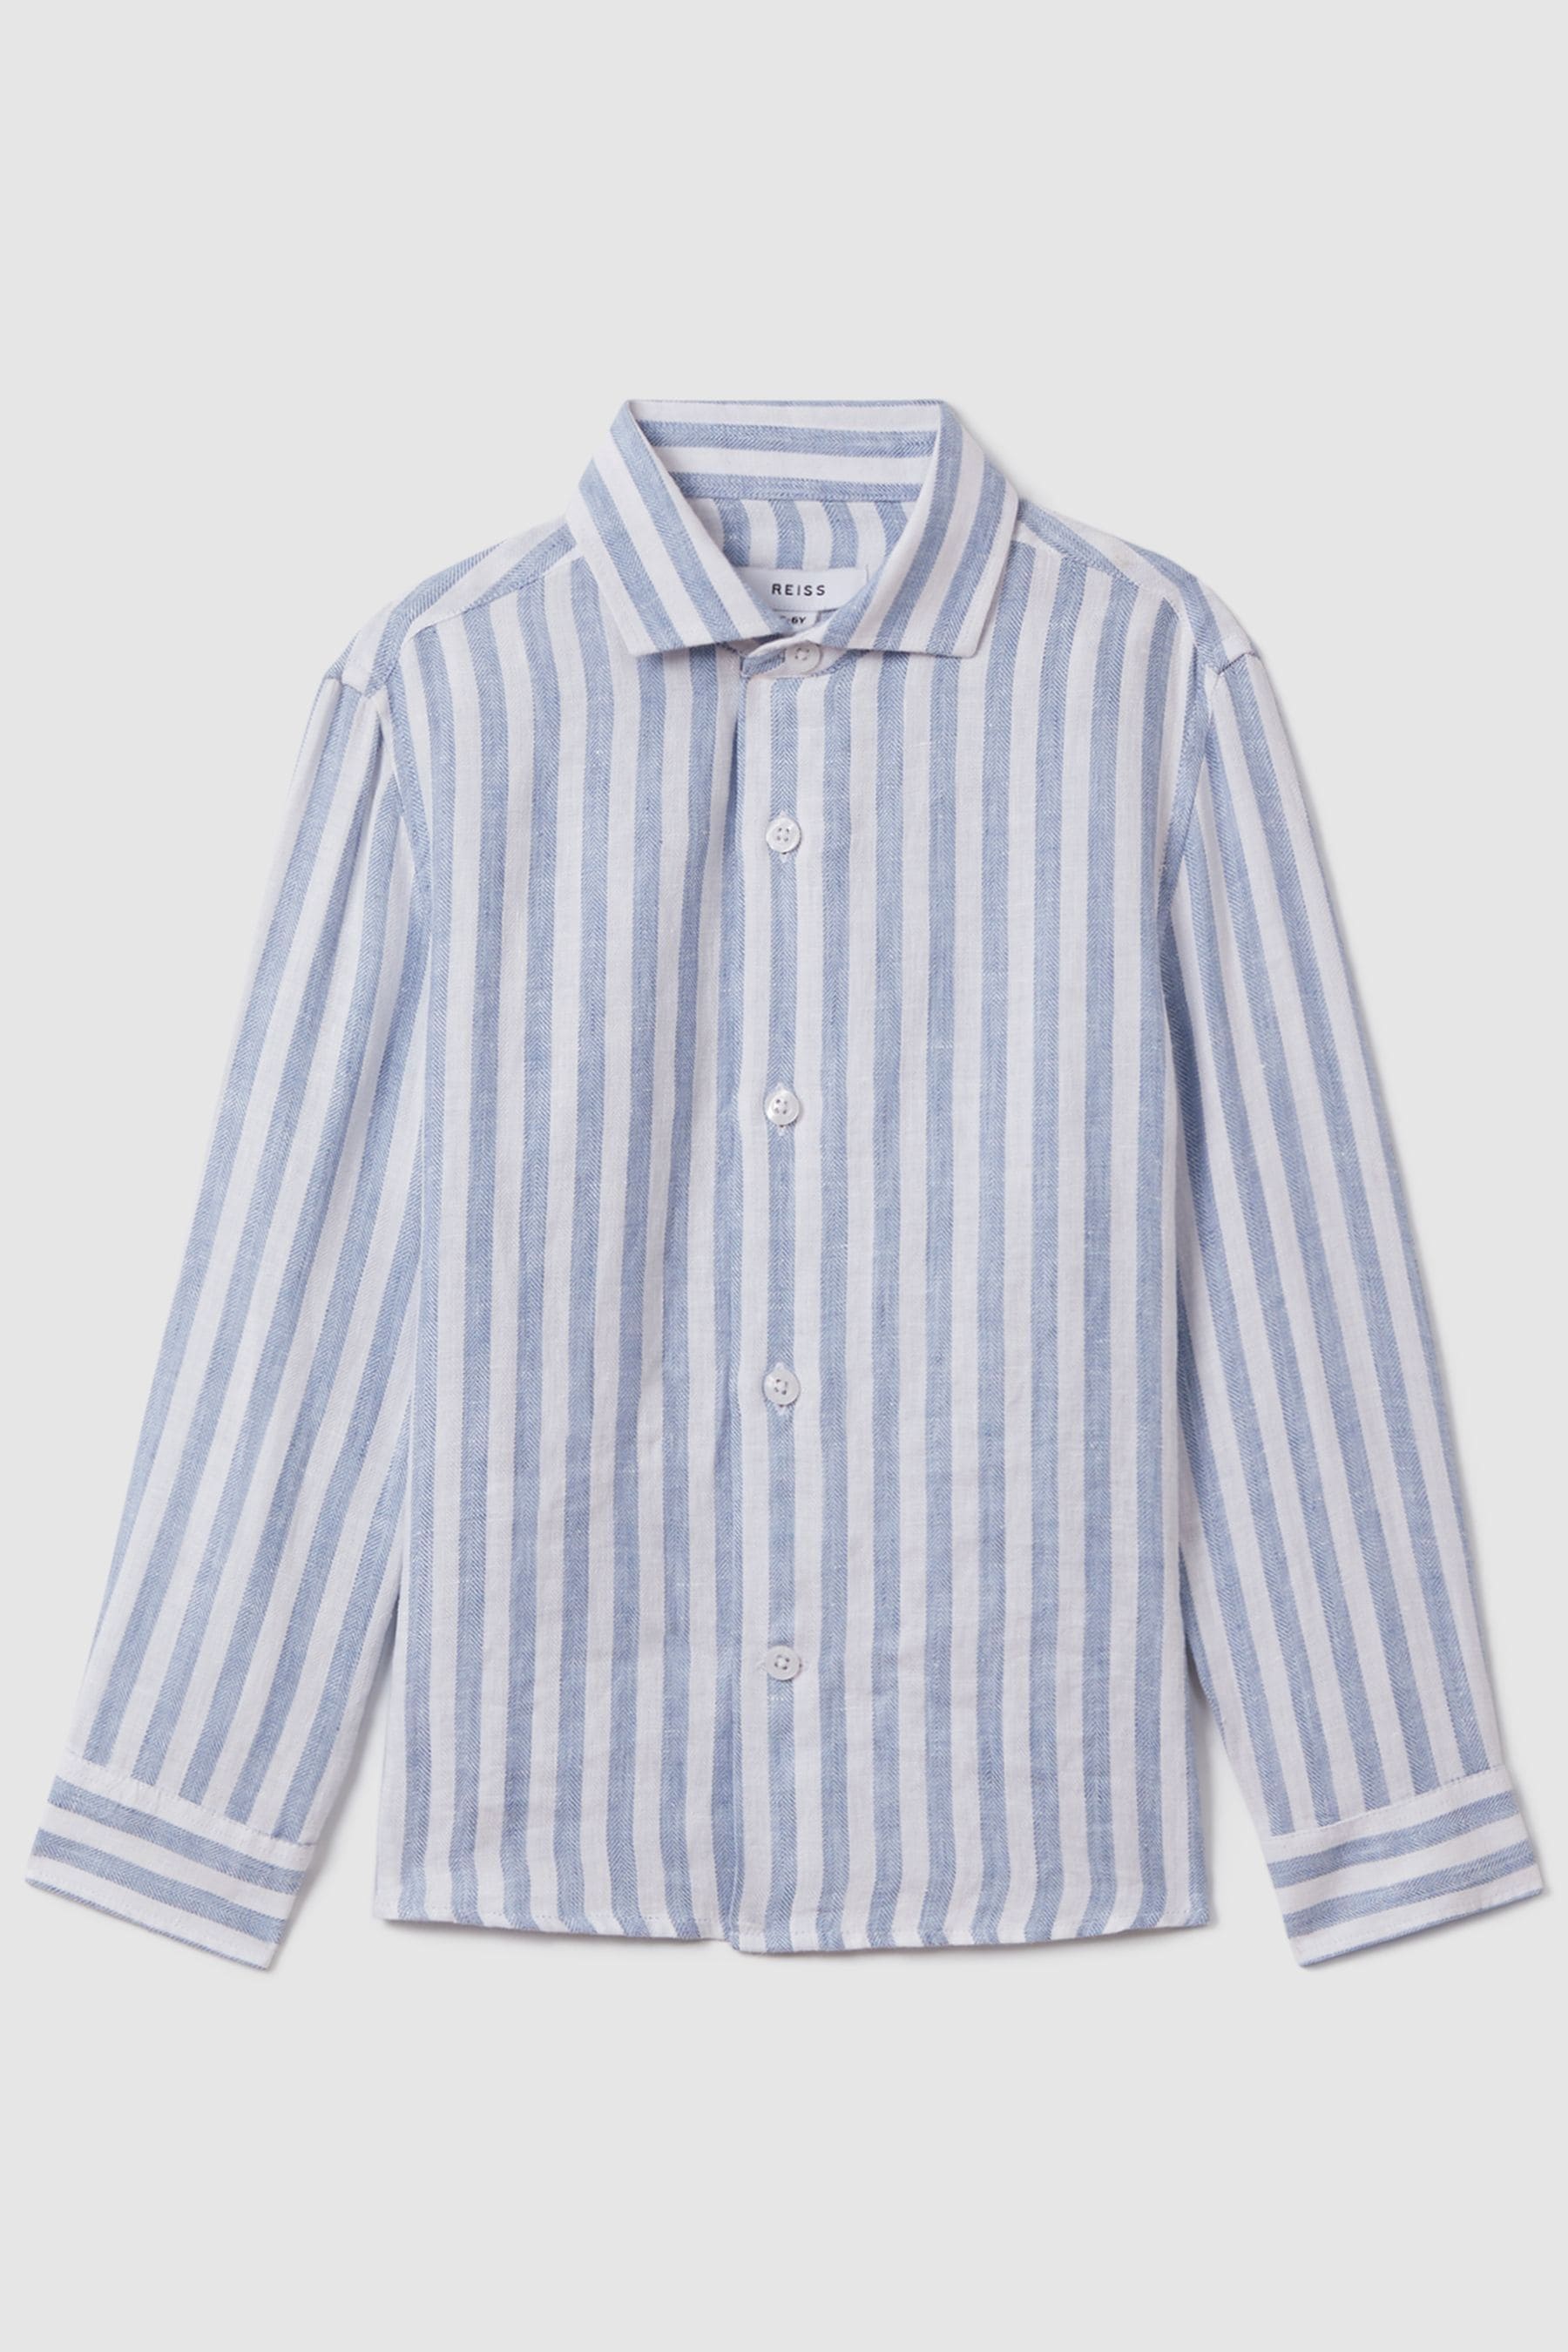 Reiss Kids' Ruban - Blue Linen Button-through Striped Shirt, Uk 13-14 Yrs